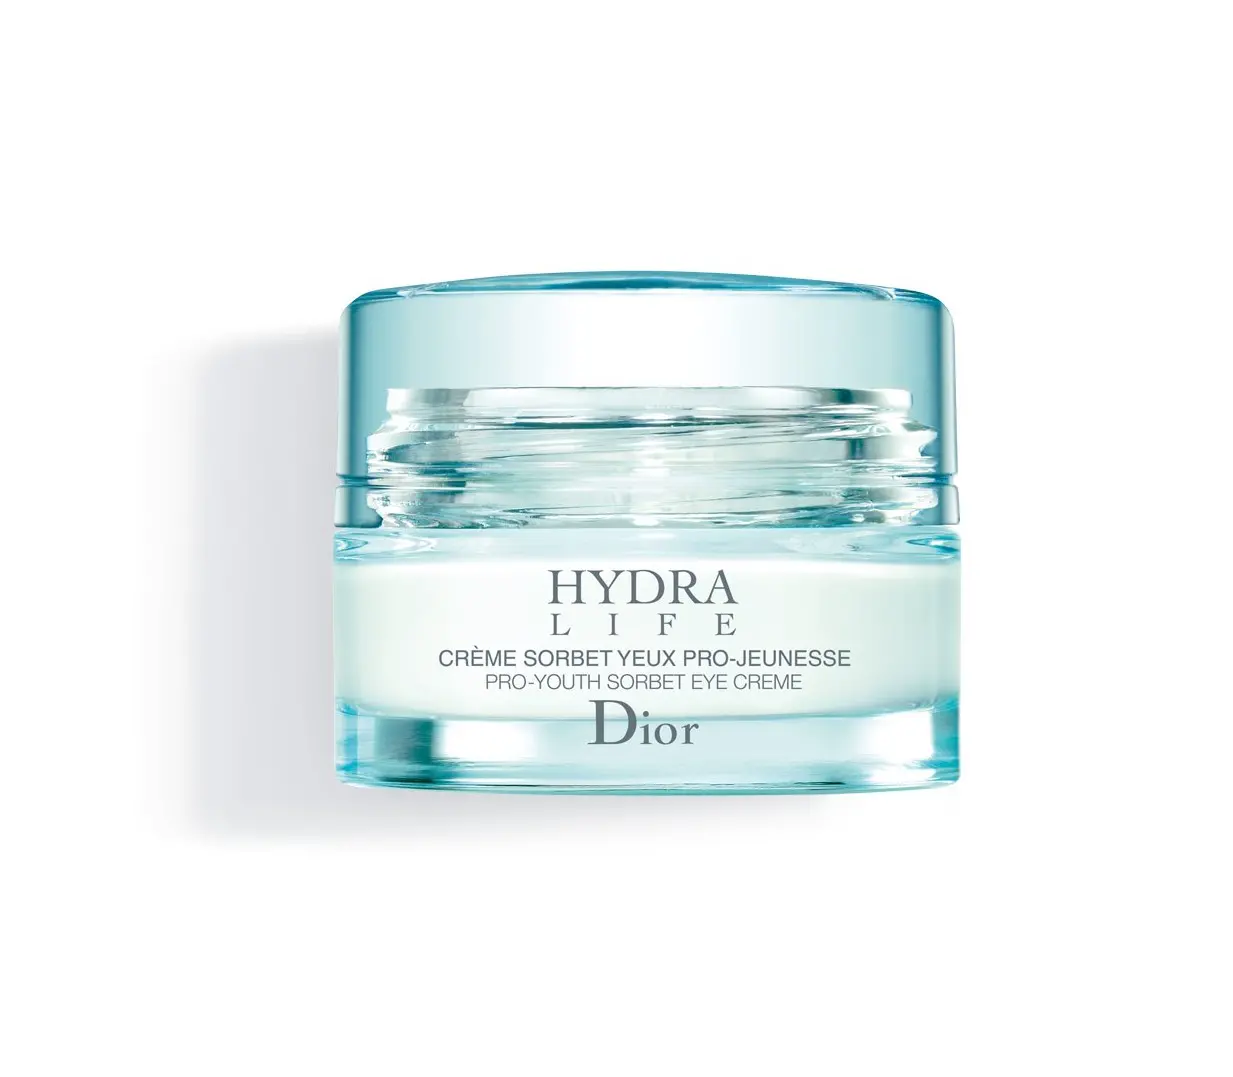 Dior hydra life крем купить выставка hydra отзывы